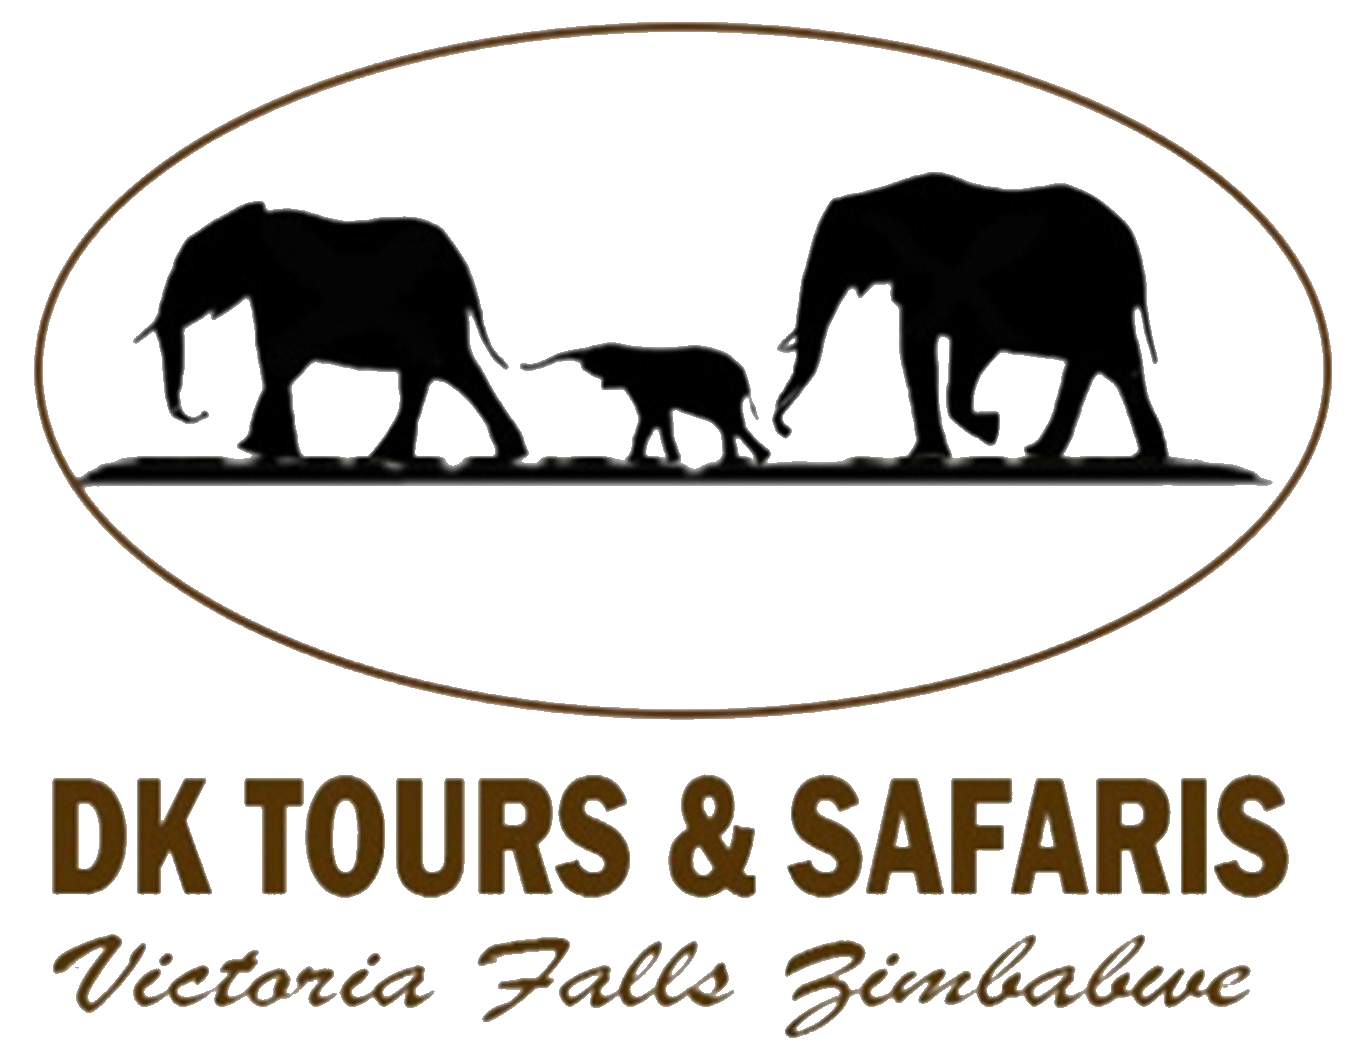 DK Tours and Safaris |   Popular